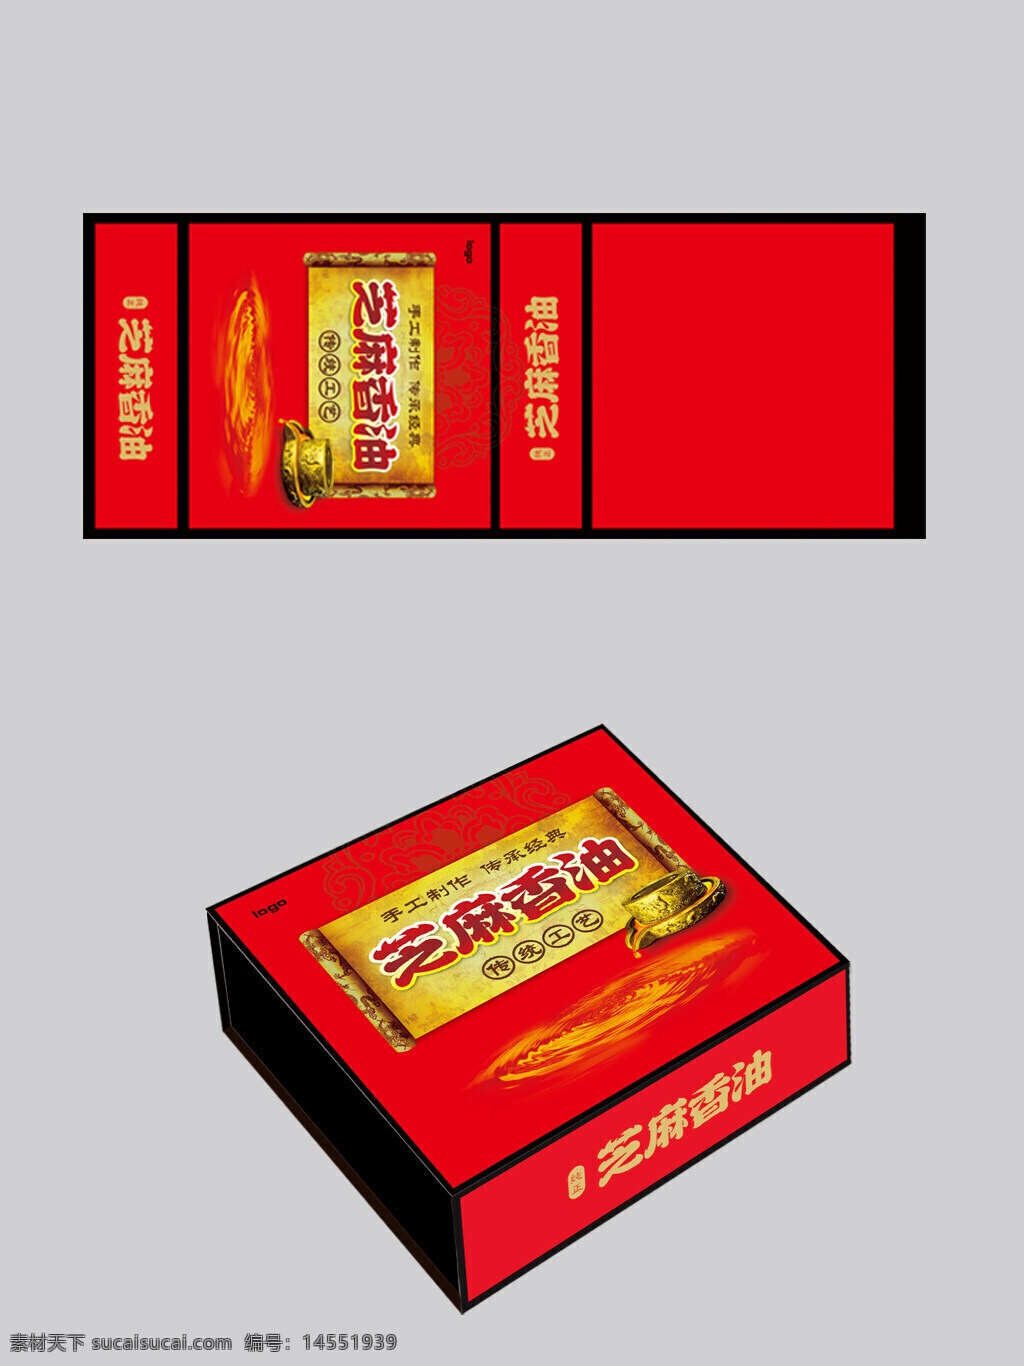 芝麻香油包装 芝麻包装 香油包装 传统包装礼盒 香油礼盒